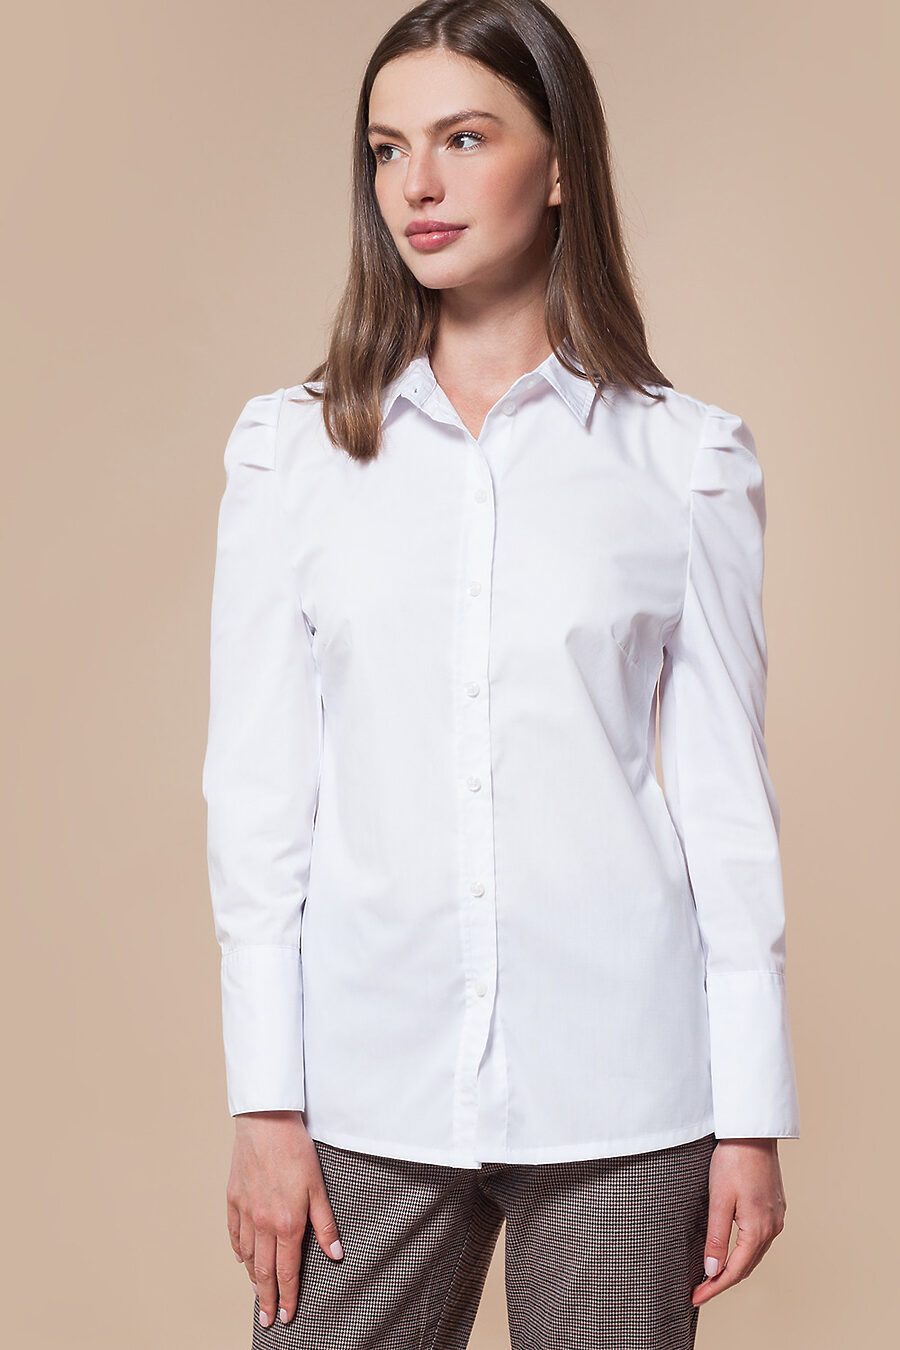 Рубашка для женщин VILATTE 795729 купить оптом от производителя. Совместная покупка женской одежды в OptMoyo